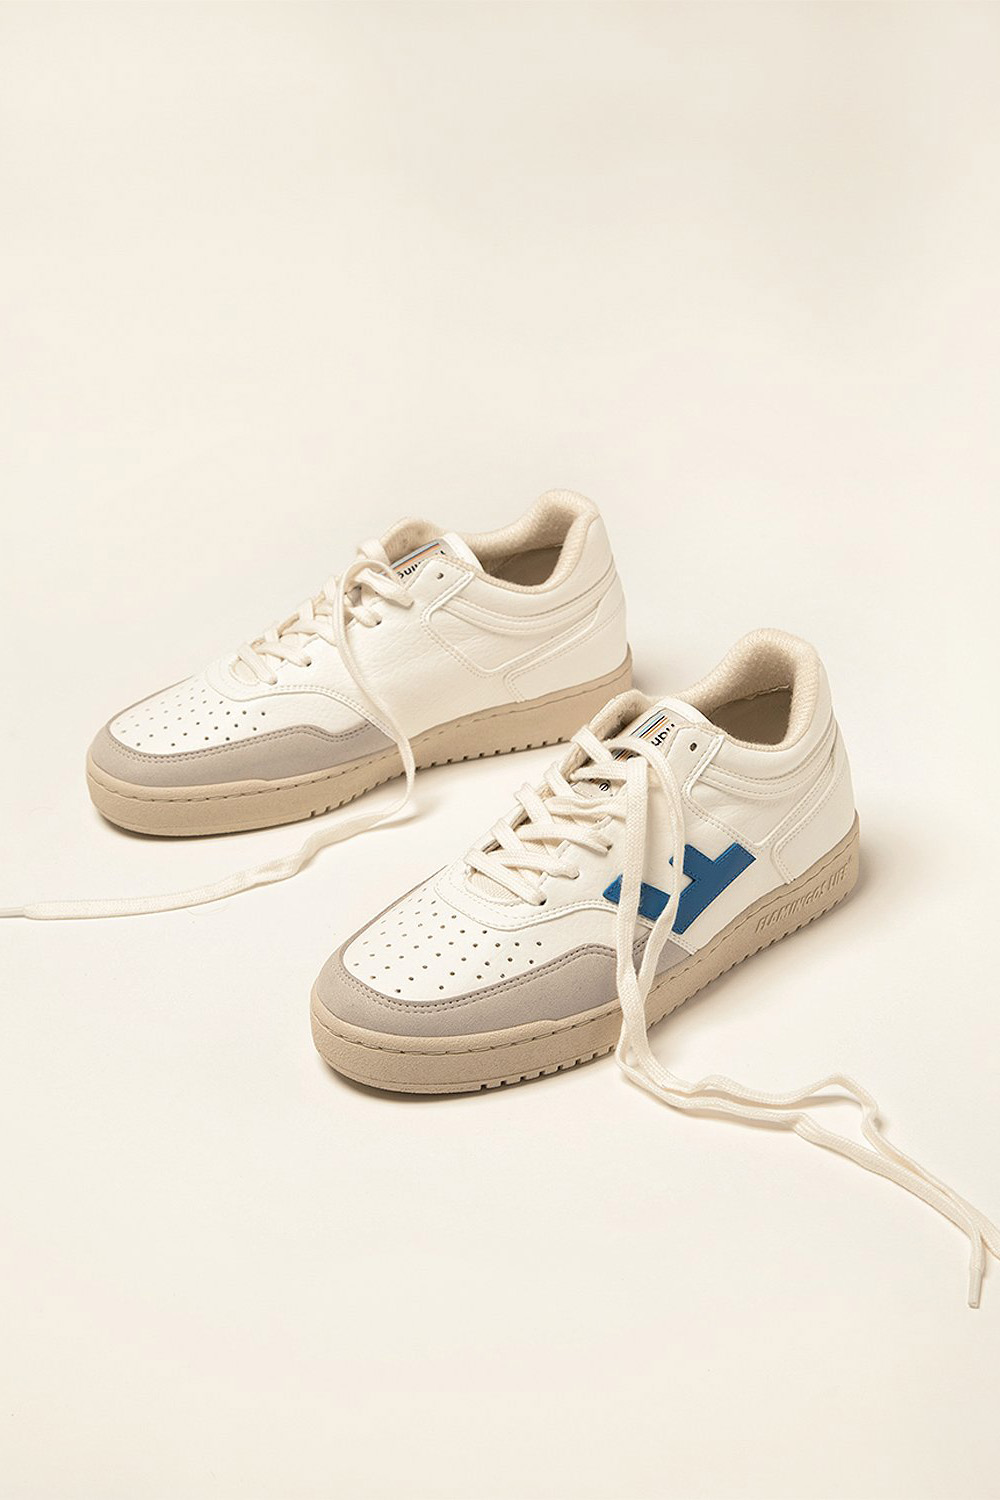 Sneaker Retro 90s White Blue Monocolor